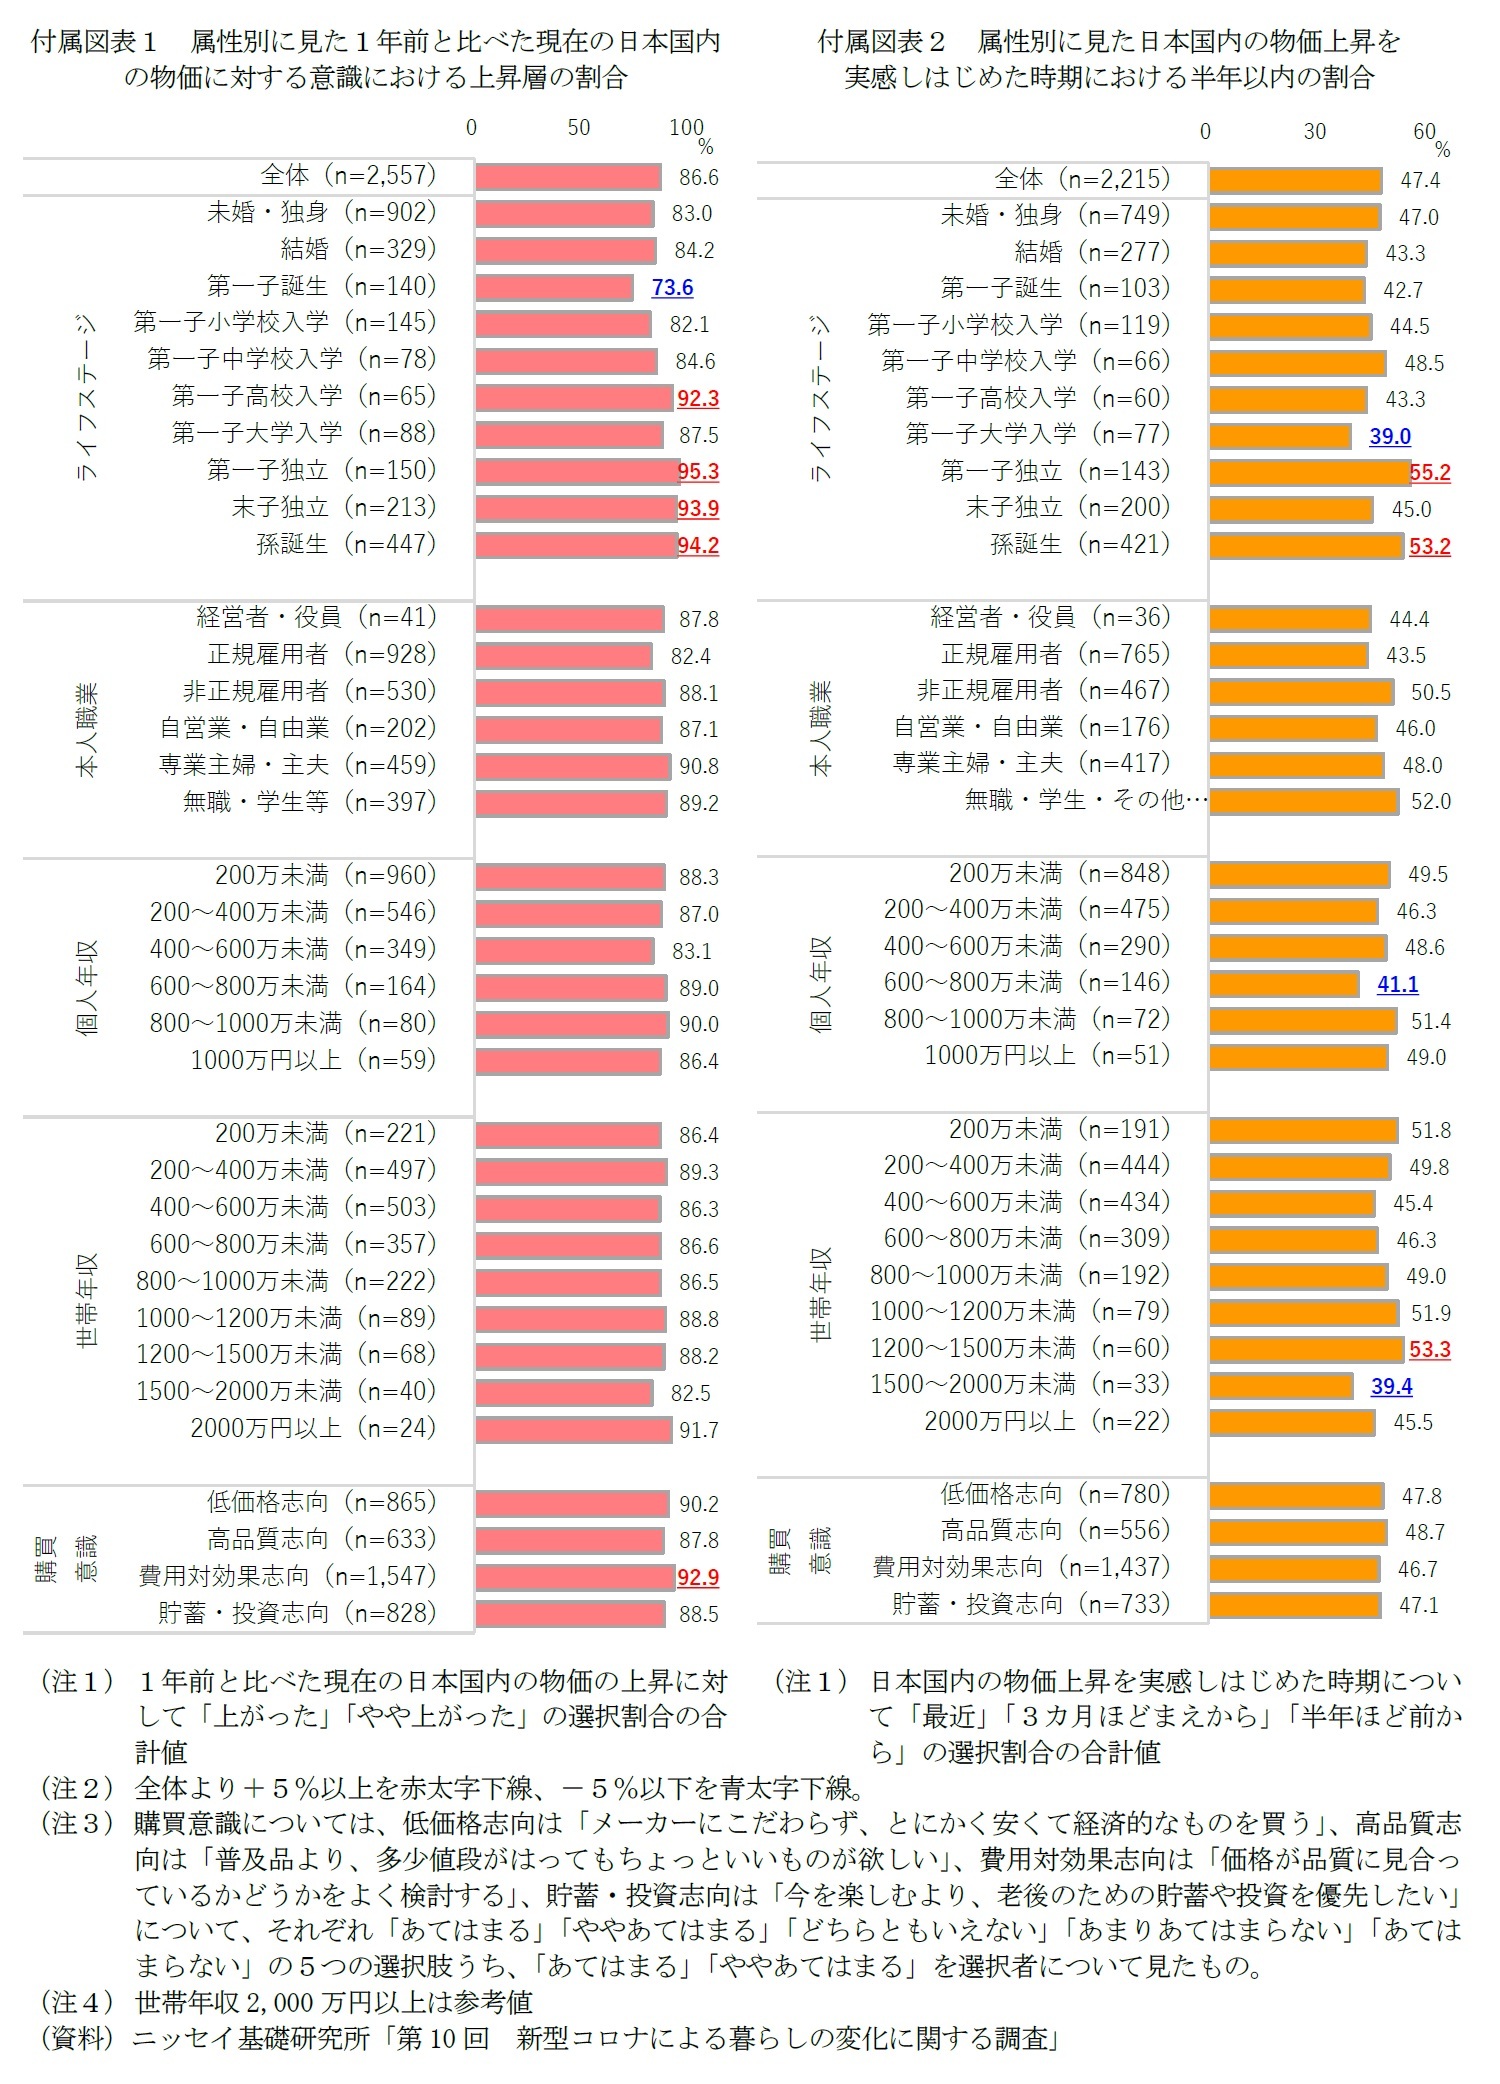 付属図表１　属性別に見た１年前と比べた現在の日本国内の物価に対する意識における上昇層の割合/付属図表２　属性別に見た日本国内の物価上昇を実感しはじめた時期における半年以内の割合